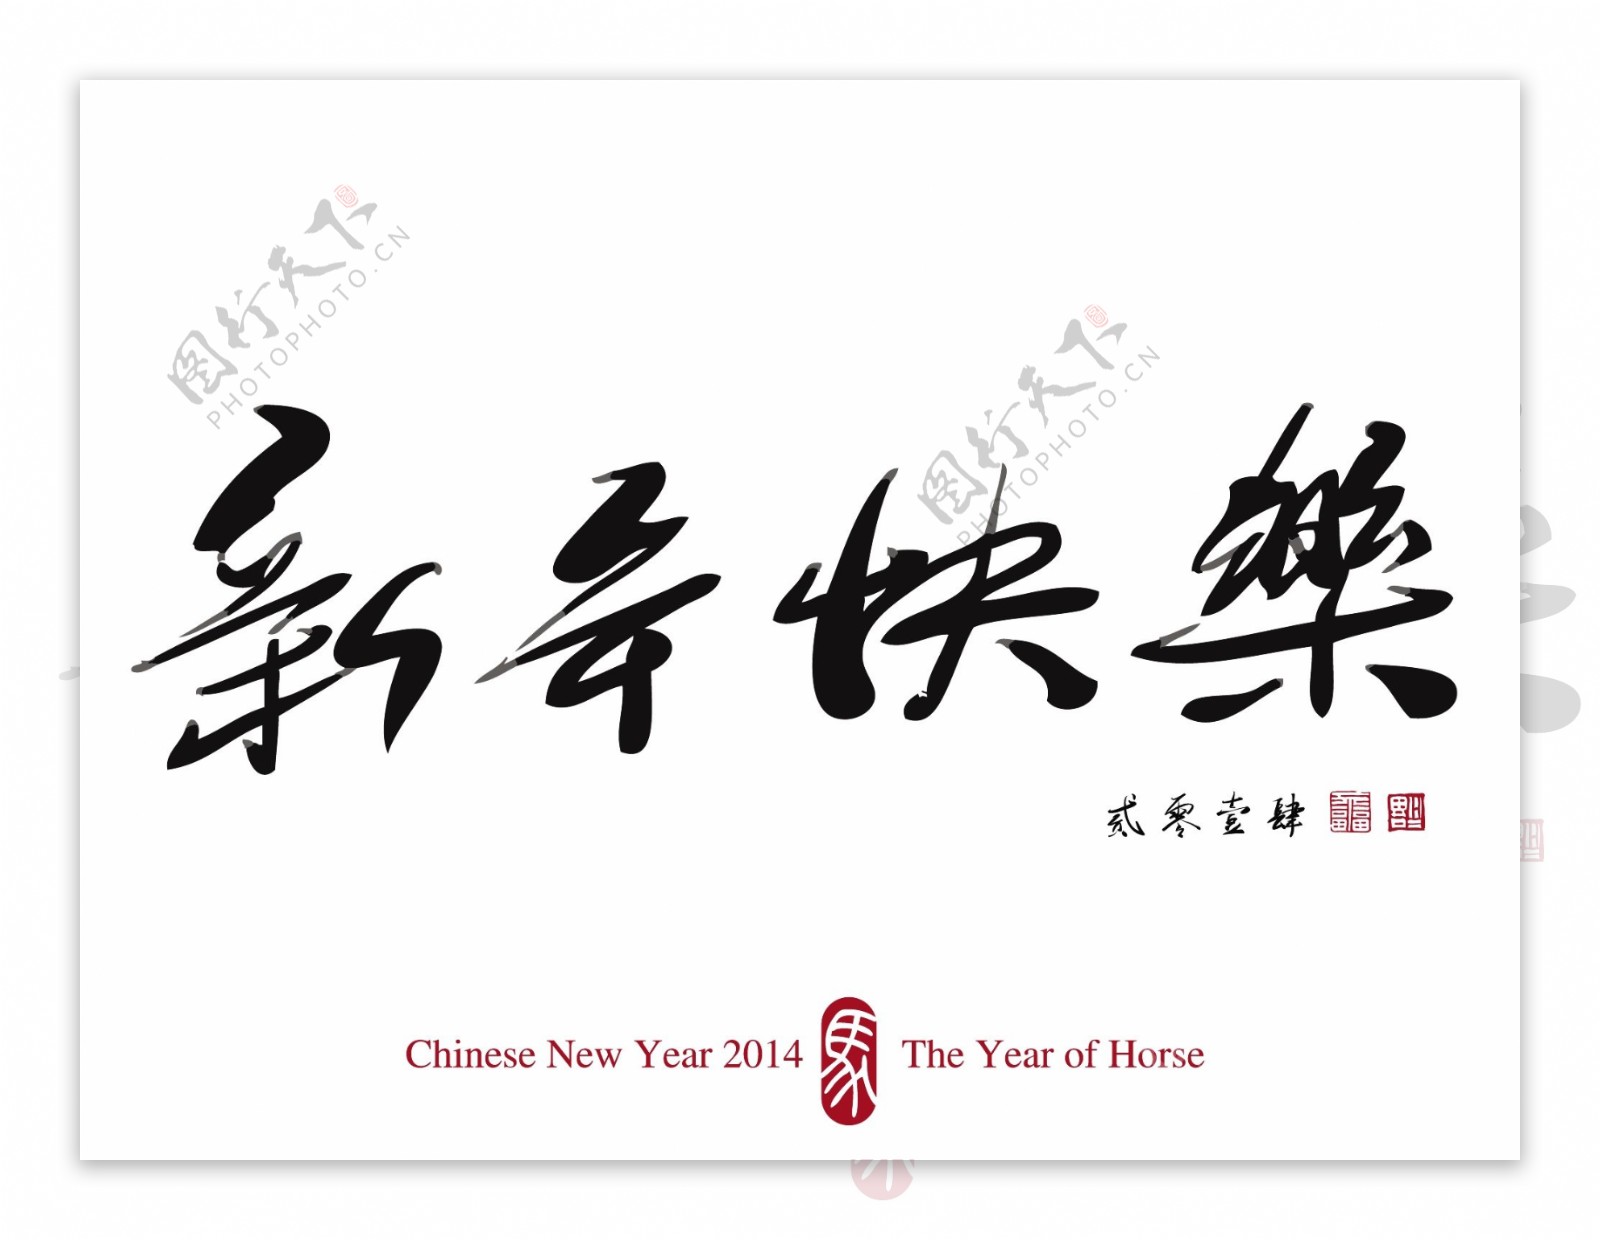 中国的新年书法2014翻译春节快乐2014